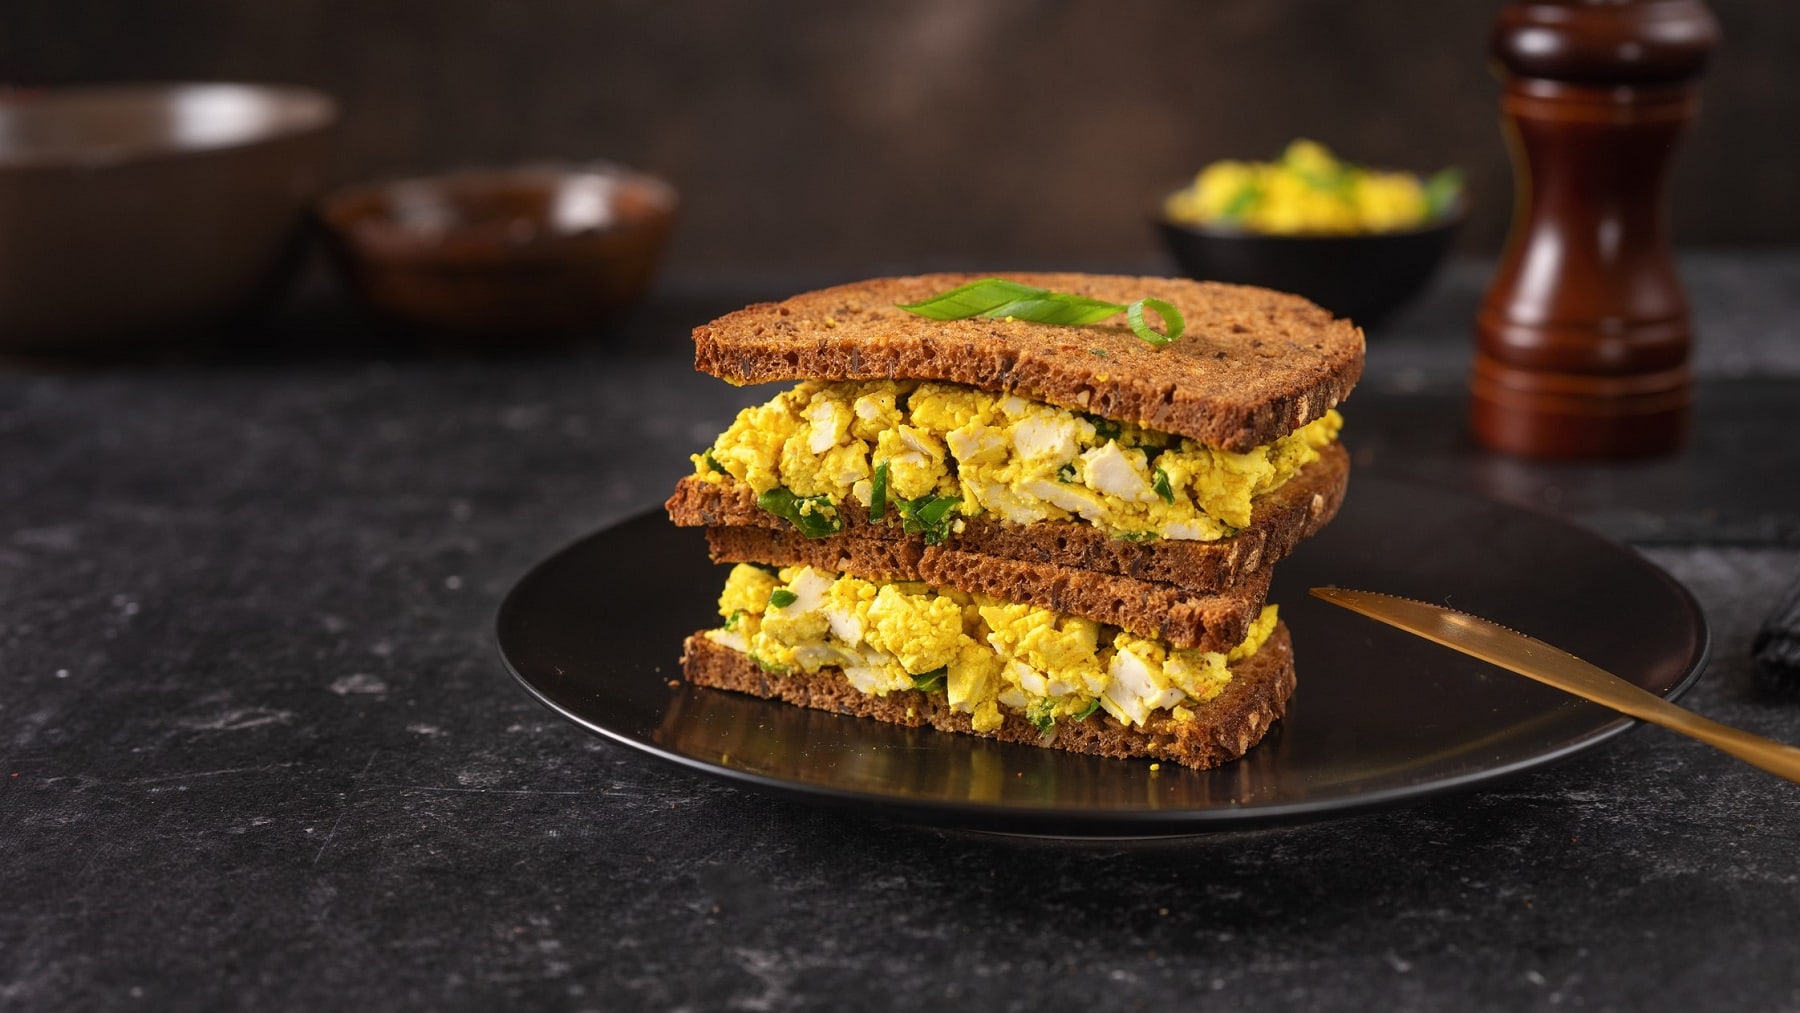 Zwei Sandwiches mit dunklem Brot und veganem Eiersalat gestapelt auf einem Teller, daneben liegt ein goldenes Messer.